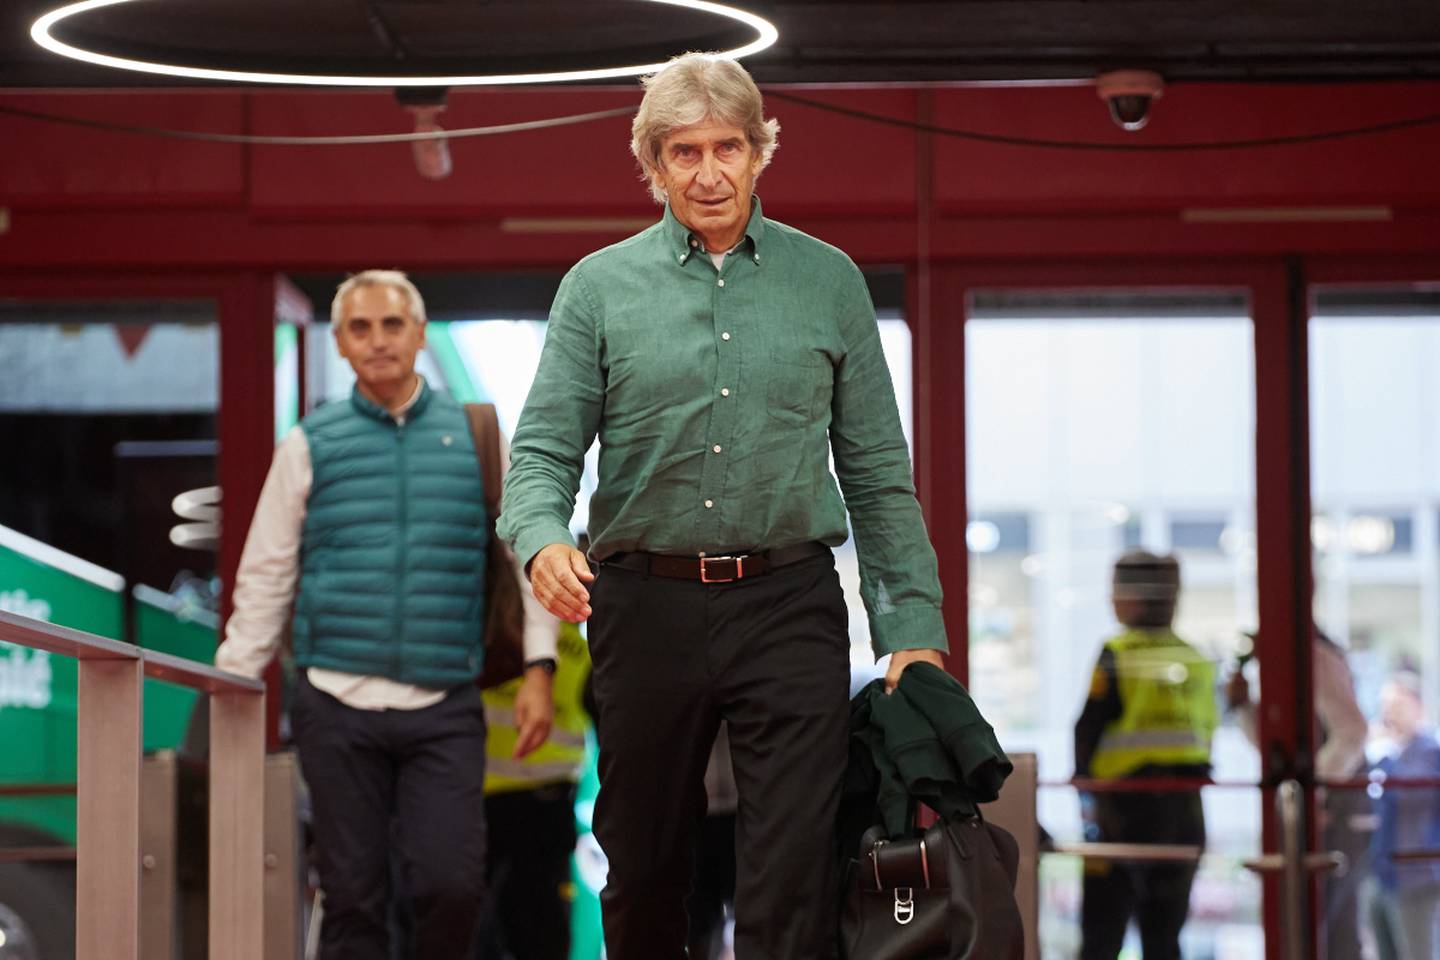 El entrenador chileno Manuel Pellegrini caminando de frente a la cámara previo a dirigir al Real Betis.